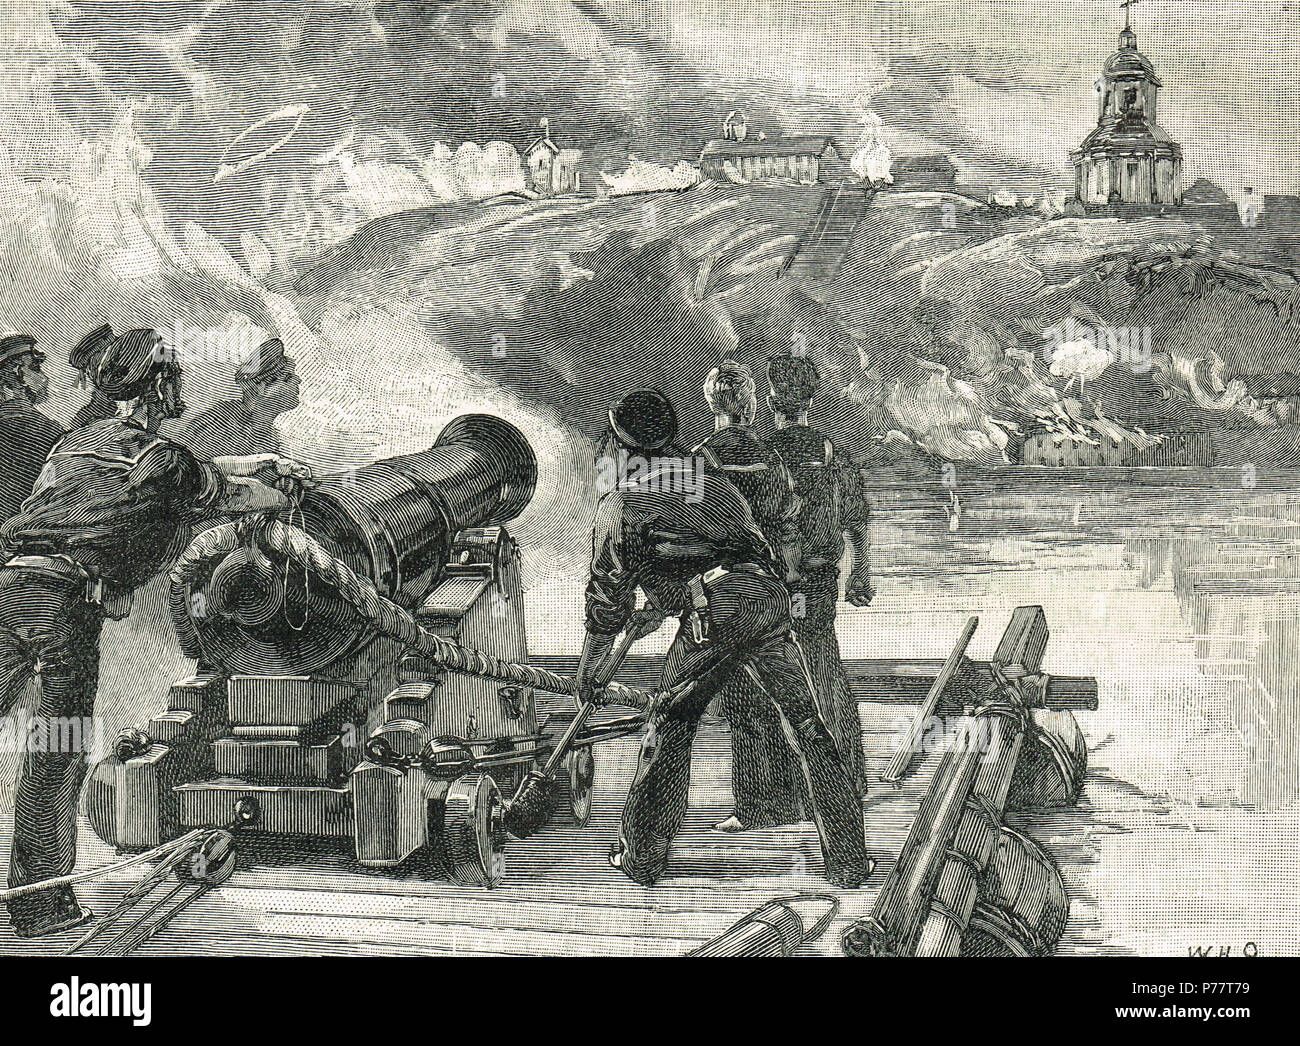 Los voluntarios de la Flying Squadron, disparando el envío, Asedio de Taganrog, 1855 Foto de stock